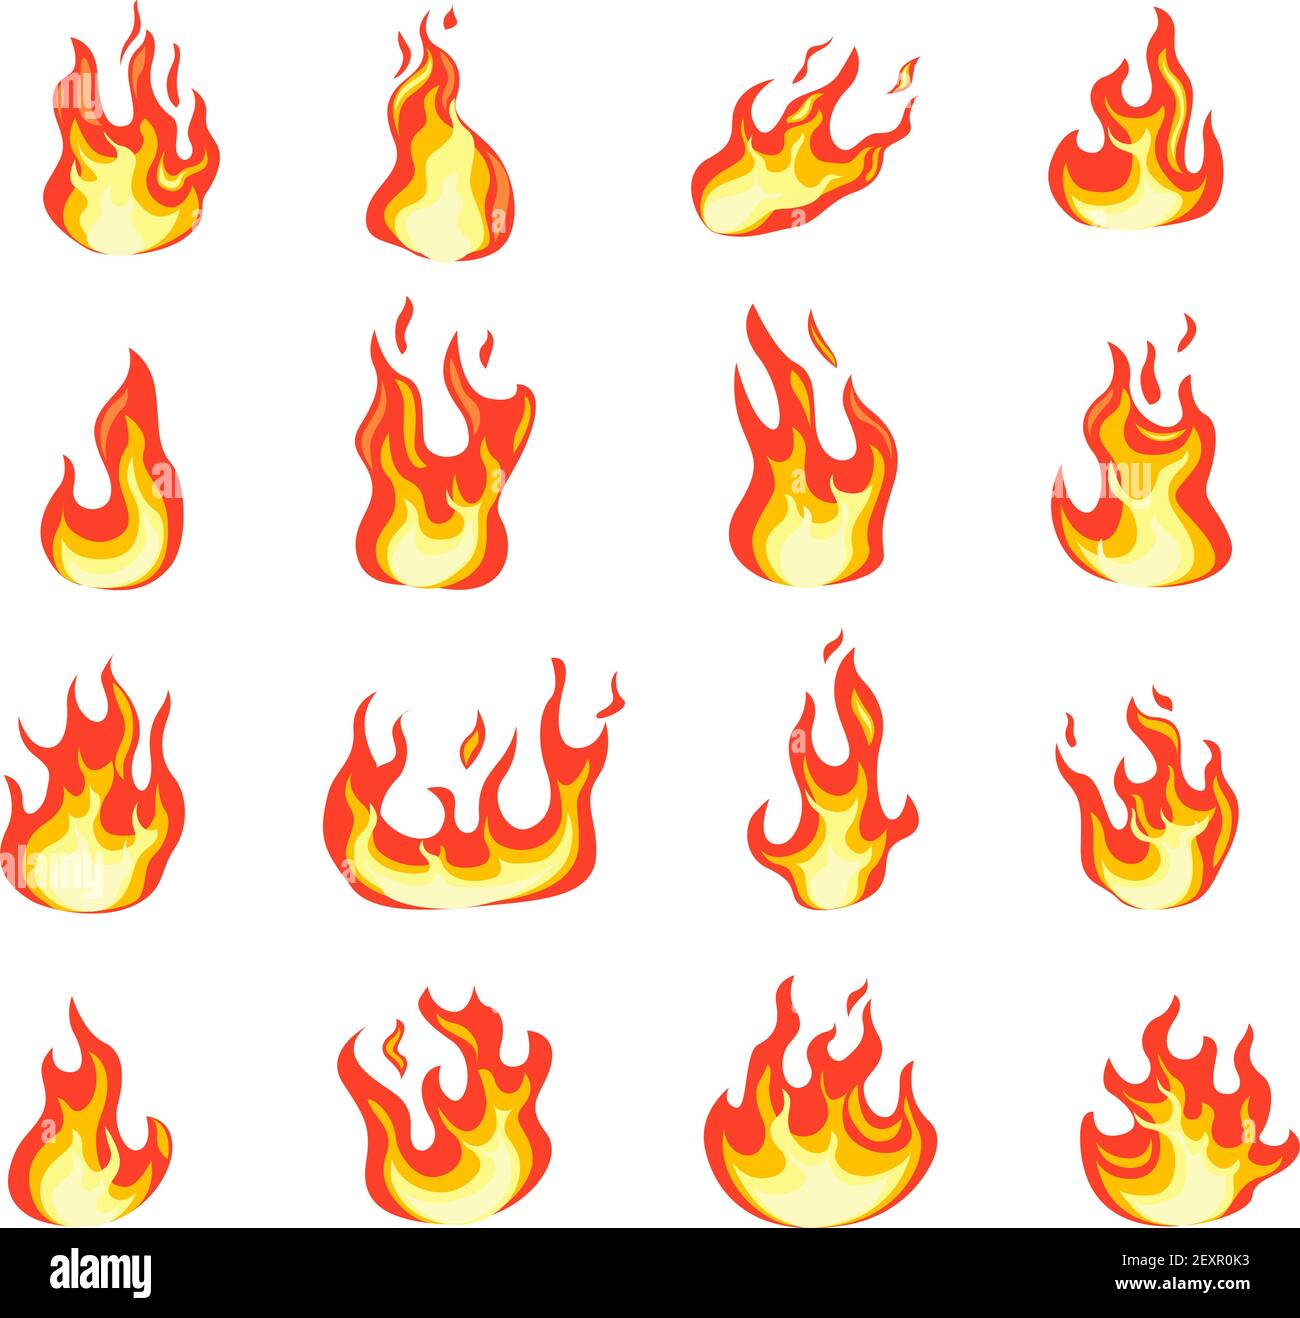 Cartoon Feuerflamme. Feuer komische Bilder, Lagerfeuer flammende Zündung, böse Hölle Flamme. Symbole für heiße Temperatur und Fieber sind flach eingestellt Stock Vektor